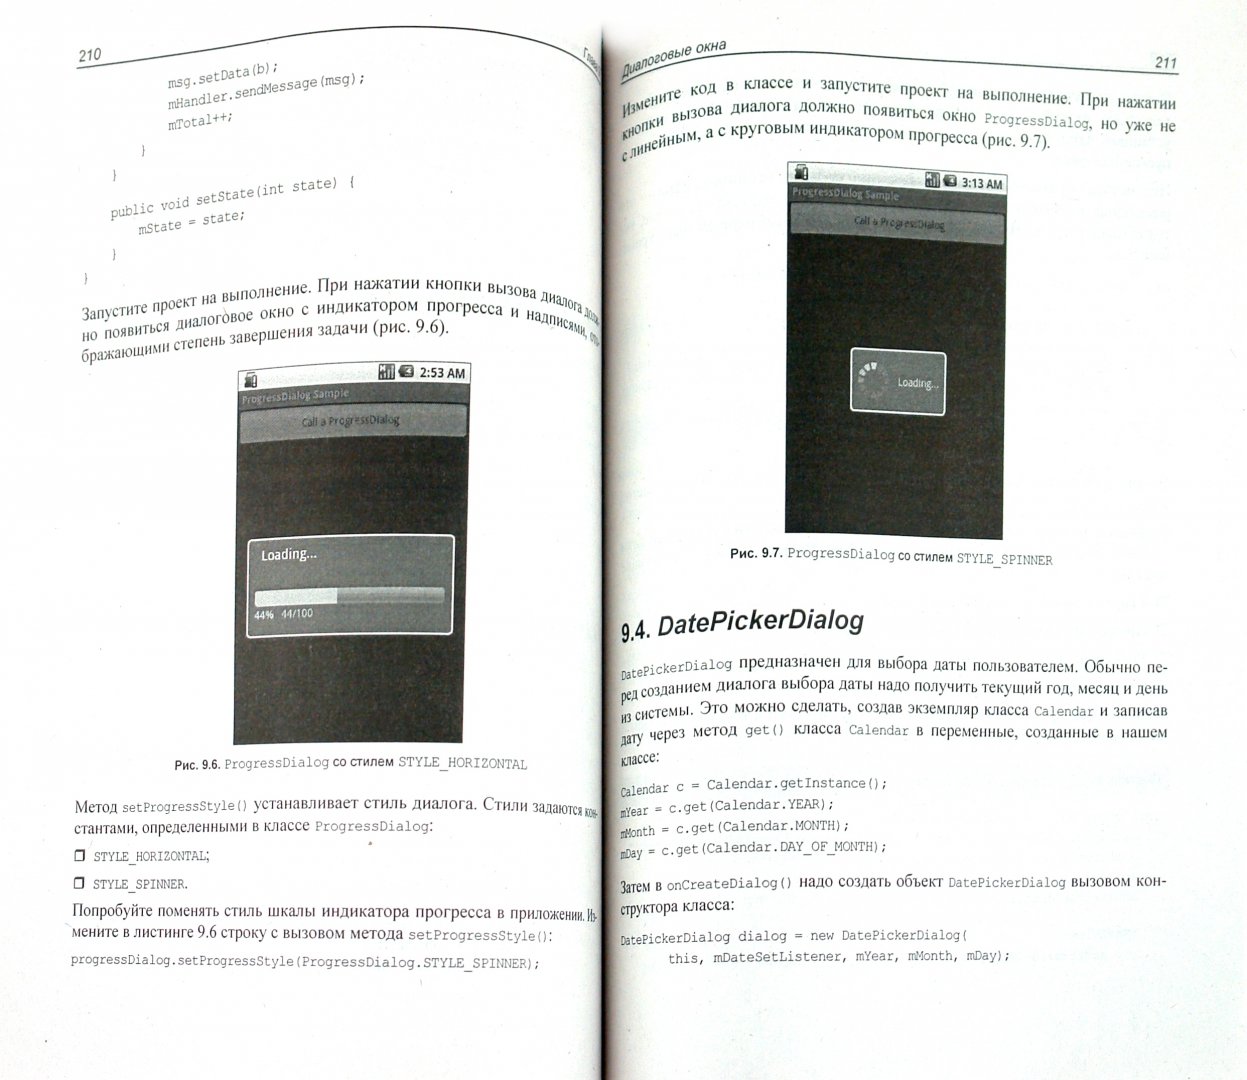 Иллюстрация 1 из 11 для Google Android: программирование для мобильных устройств (+ CD) - Алексей Голощапов | Лабиринт - книги. Источник: Лабиринт